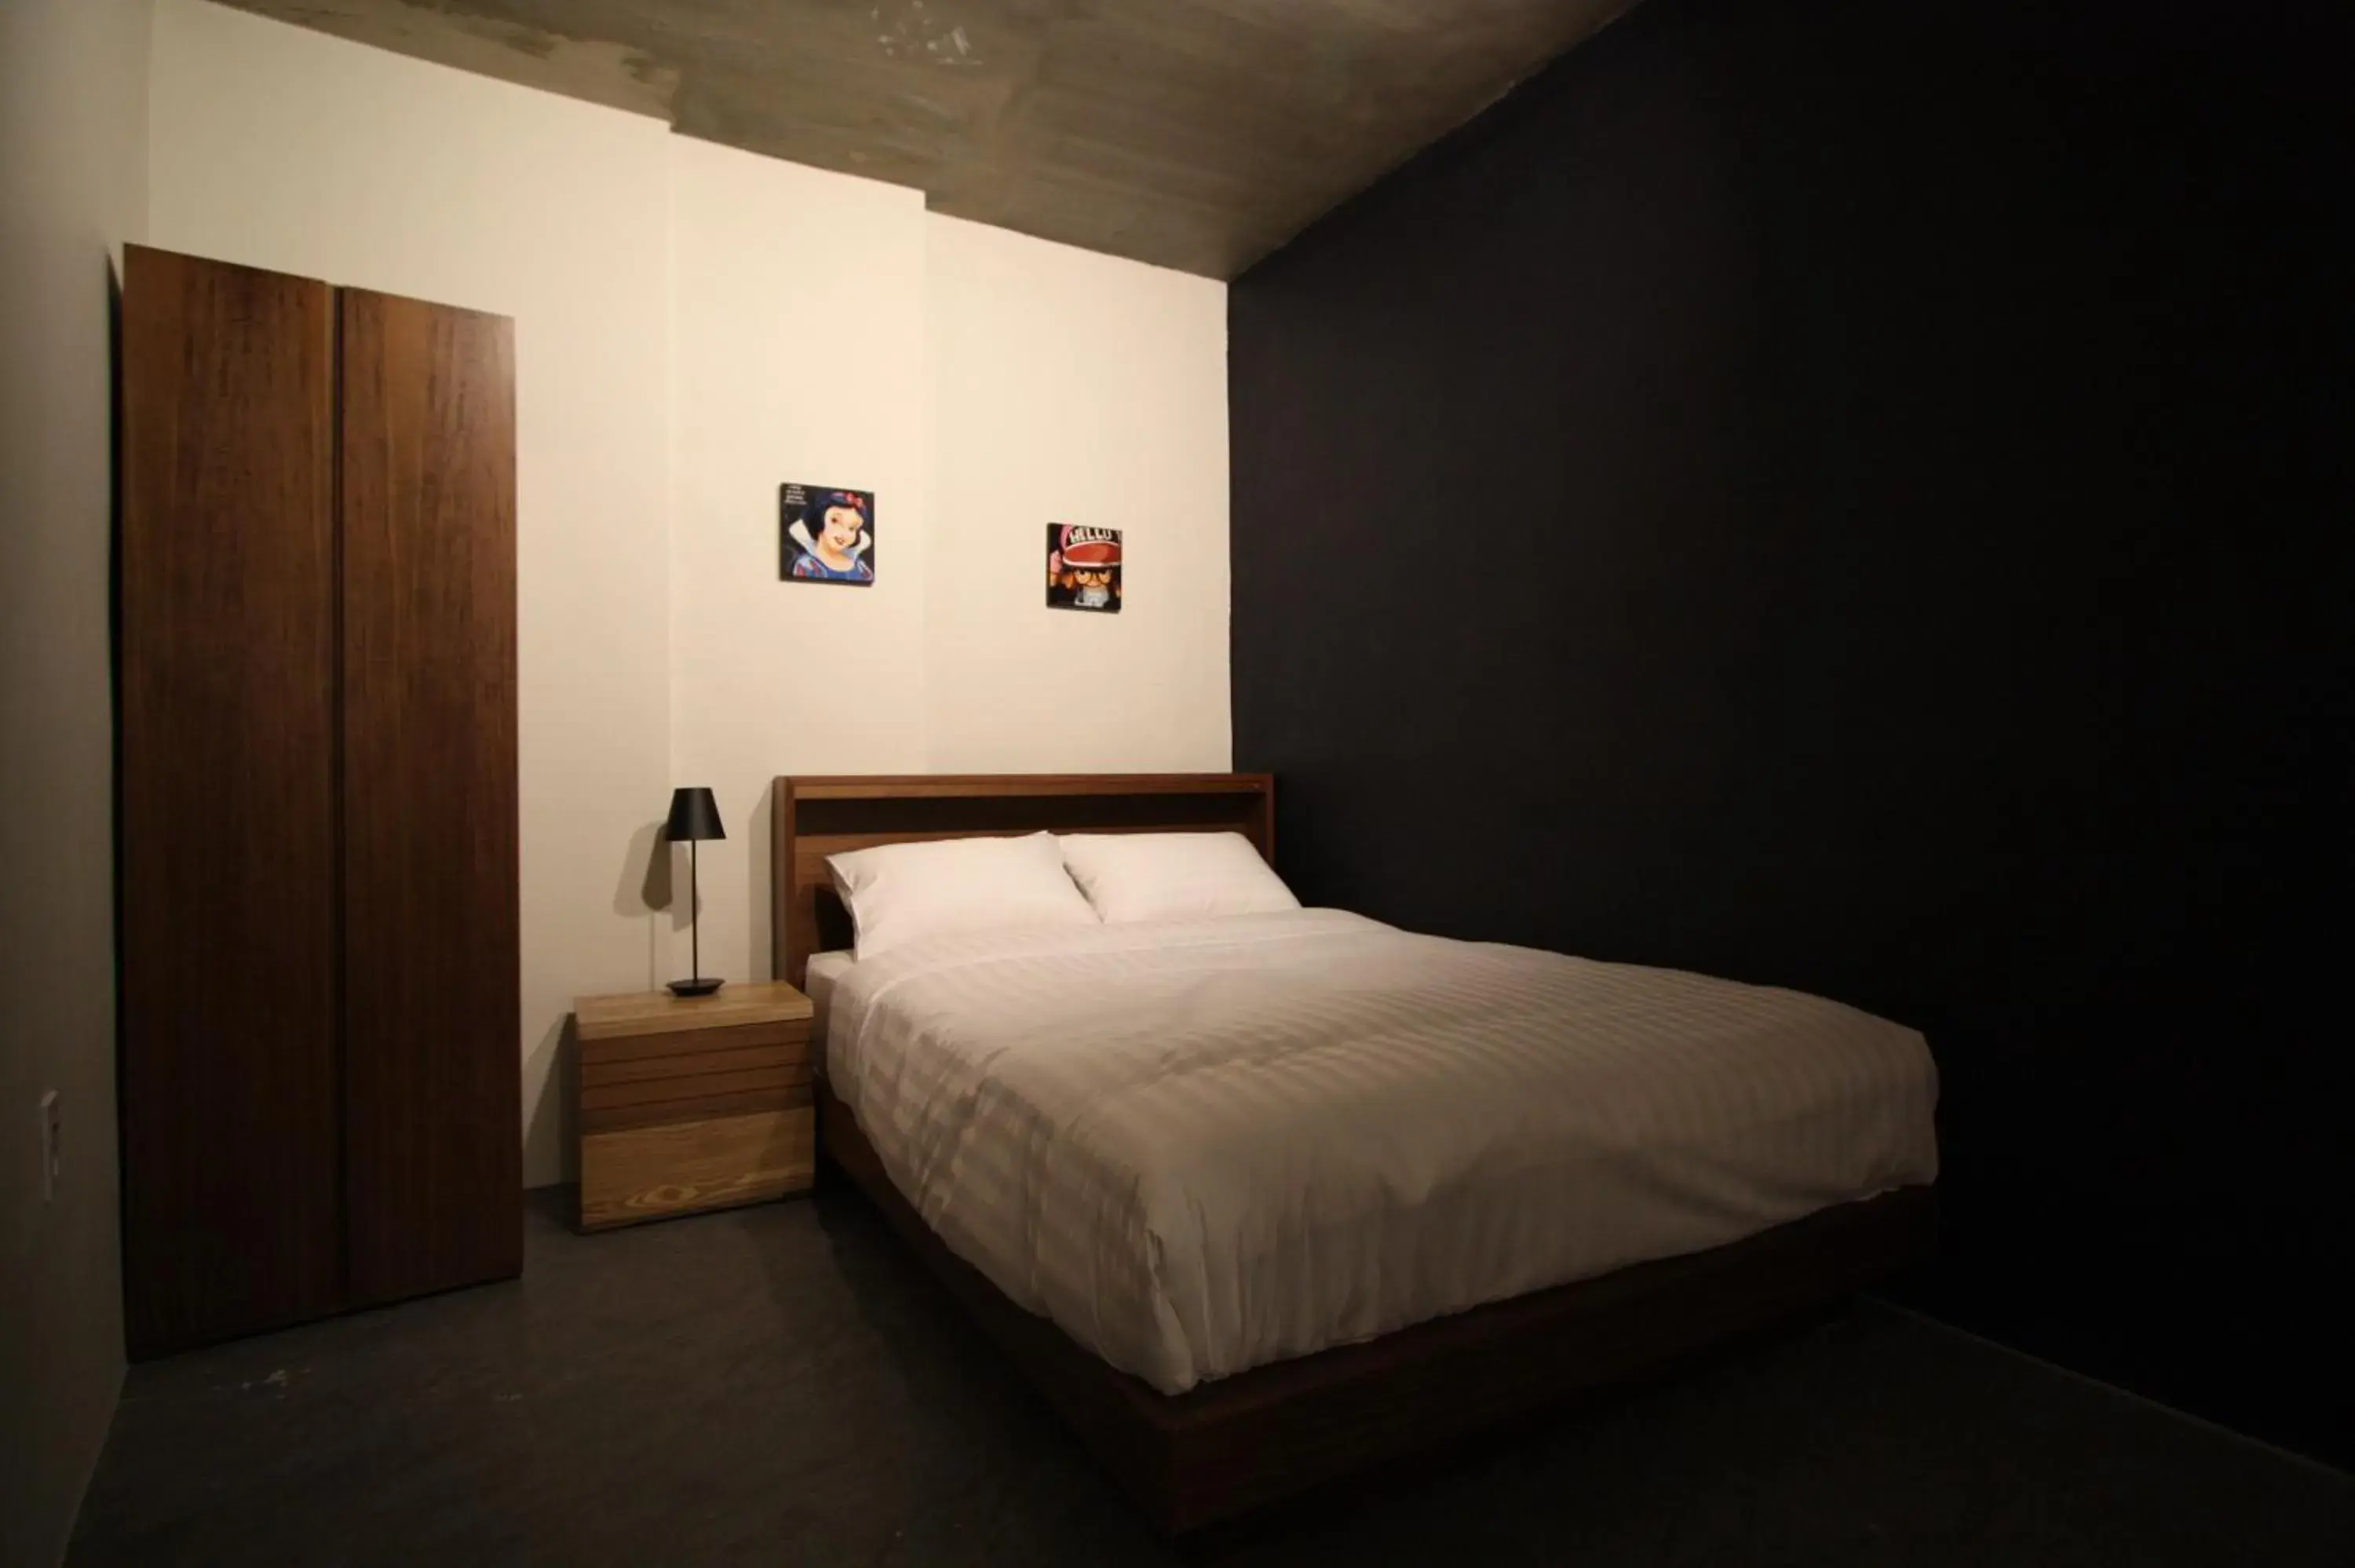 Bedroom, Room Photo in Nabi Hostel Hongdae